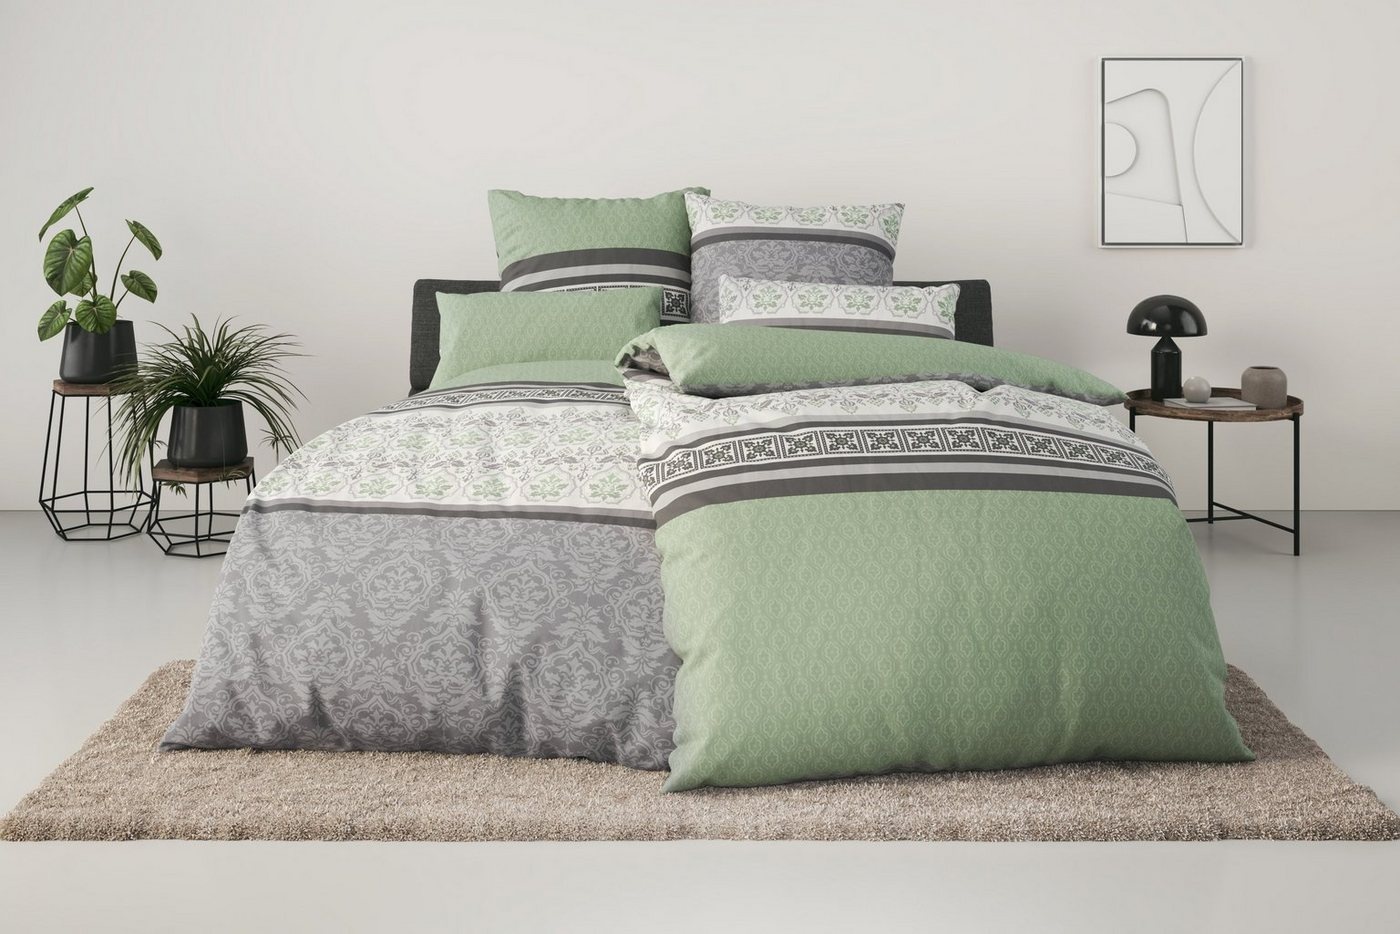 Bettwäsche PIA, Home affaire, Linon, 3 teilig, romantische Bettwäsche in verschiedenen Qualitäten, ab Gr. 135x200 cm grün